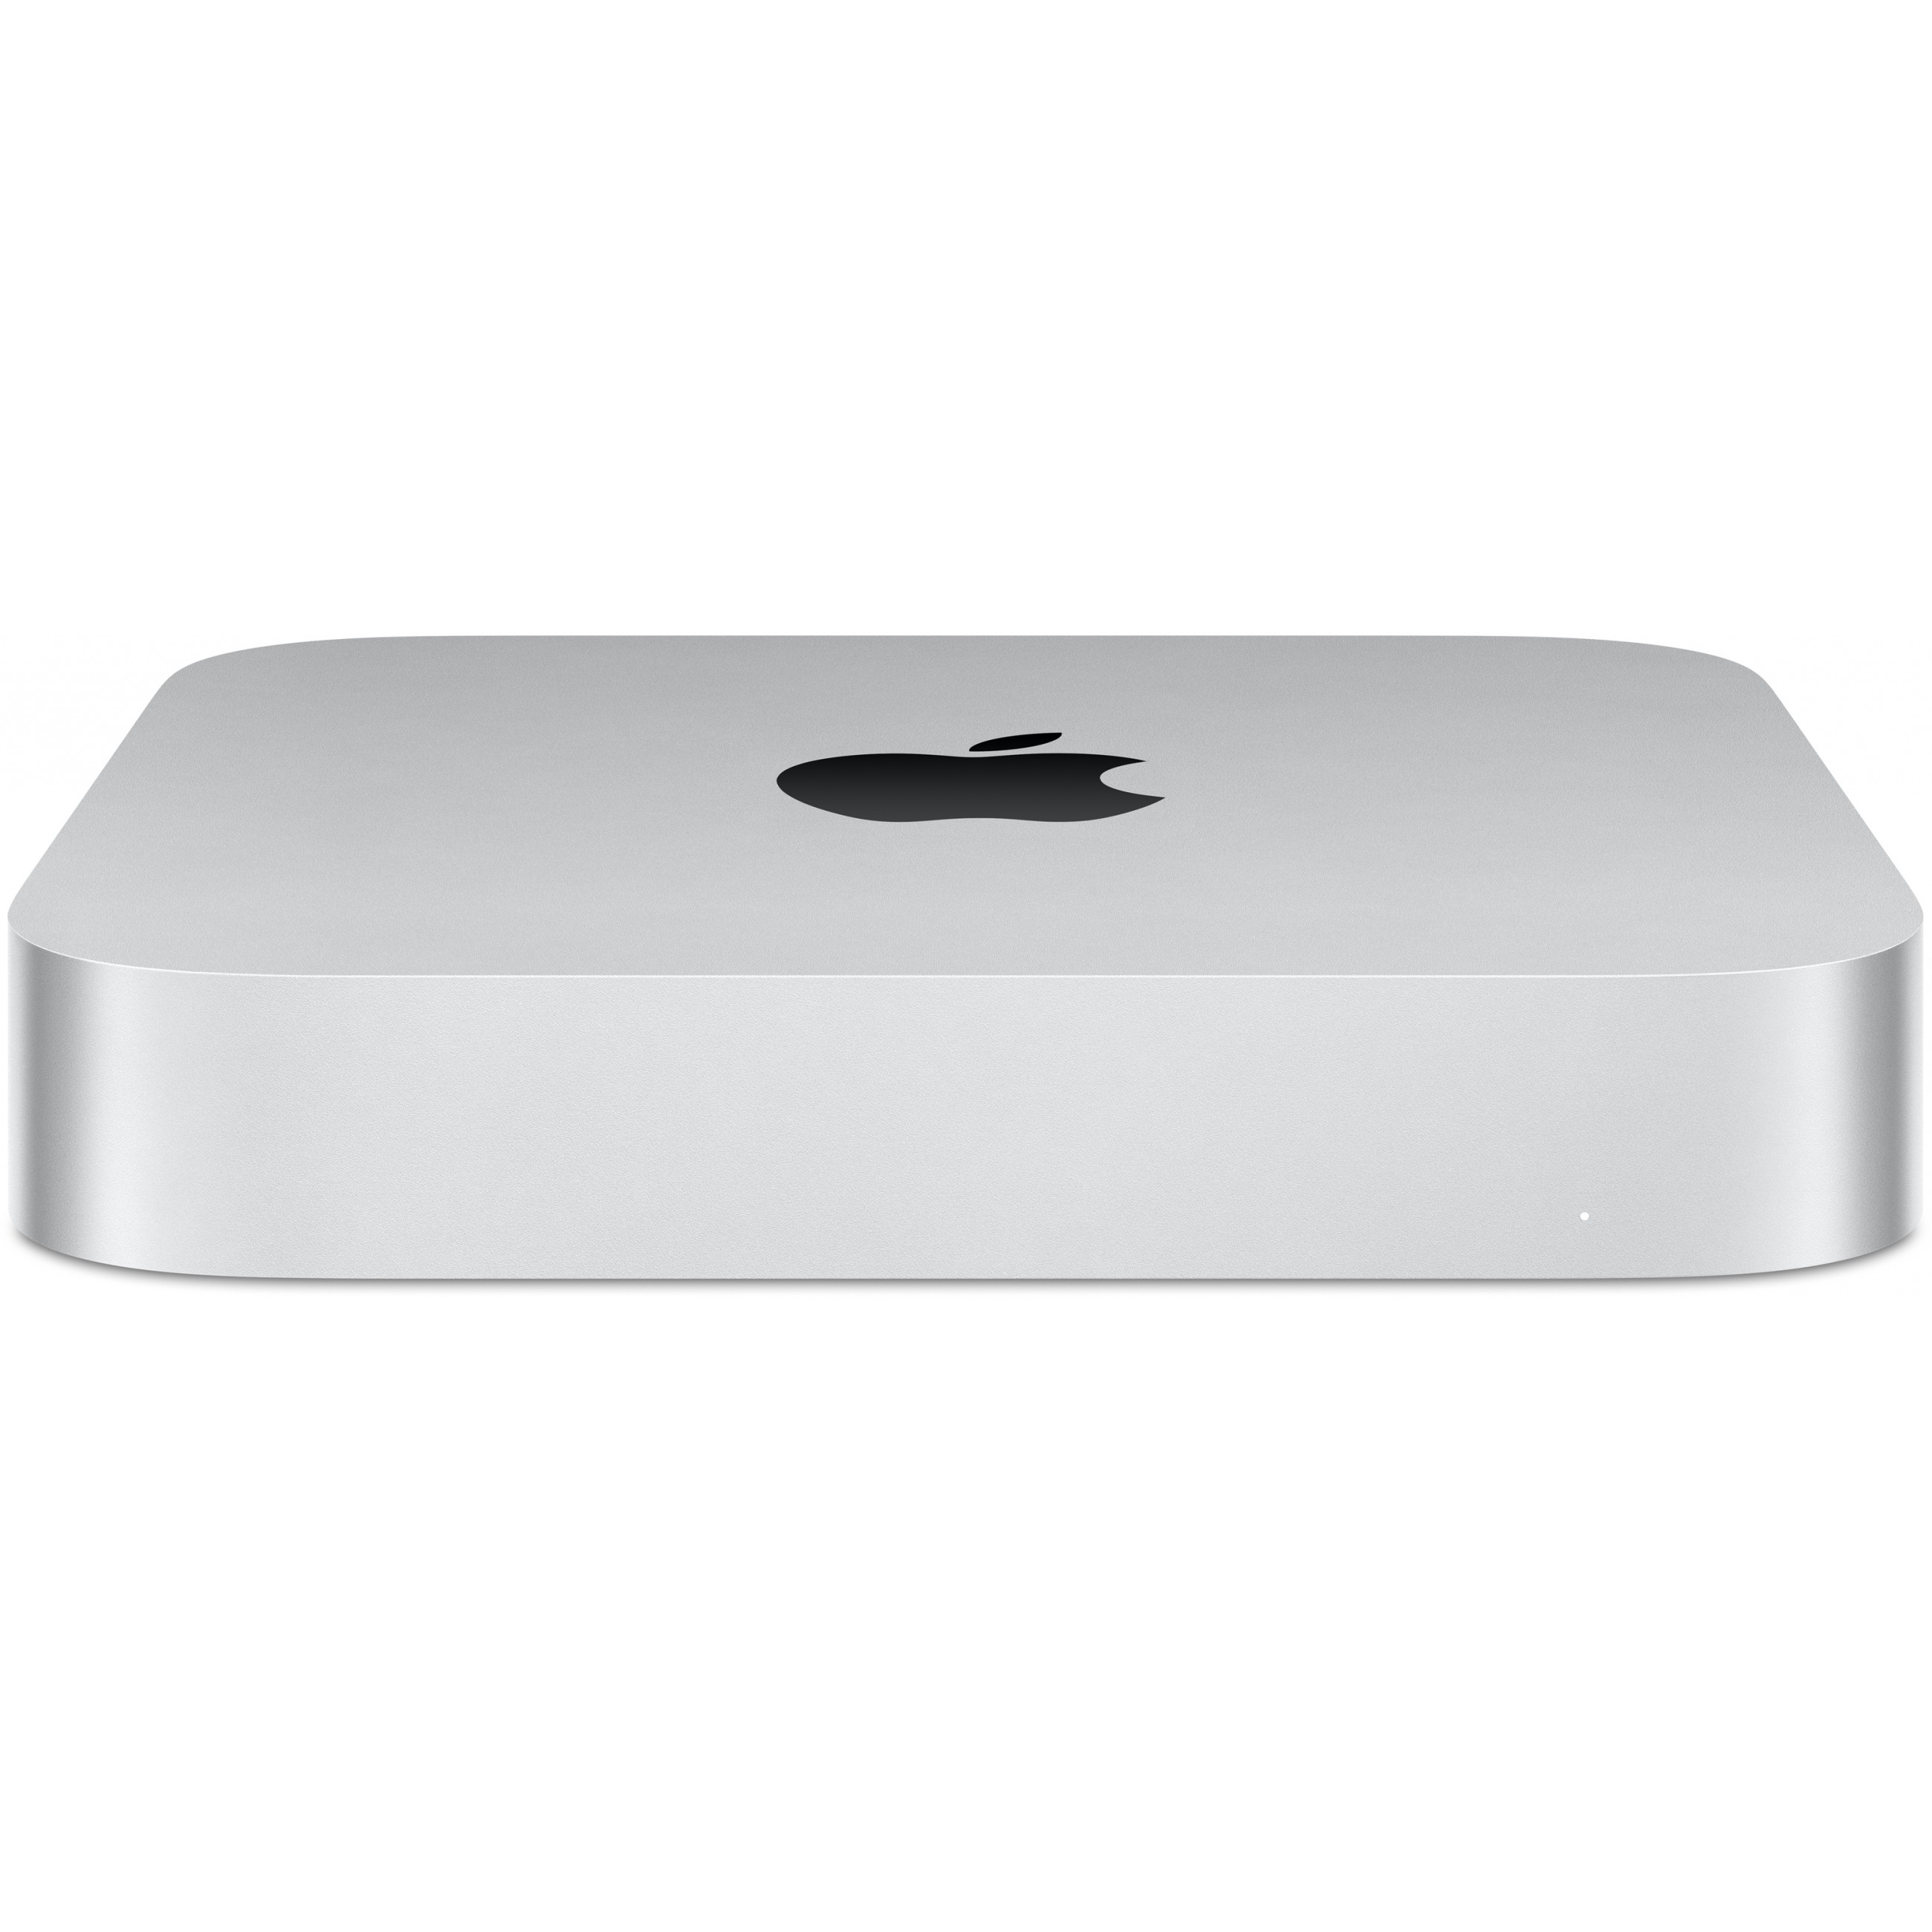 Apple Mac mini - MNH73D/A